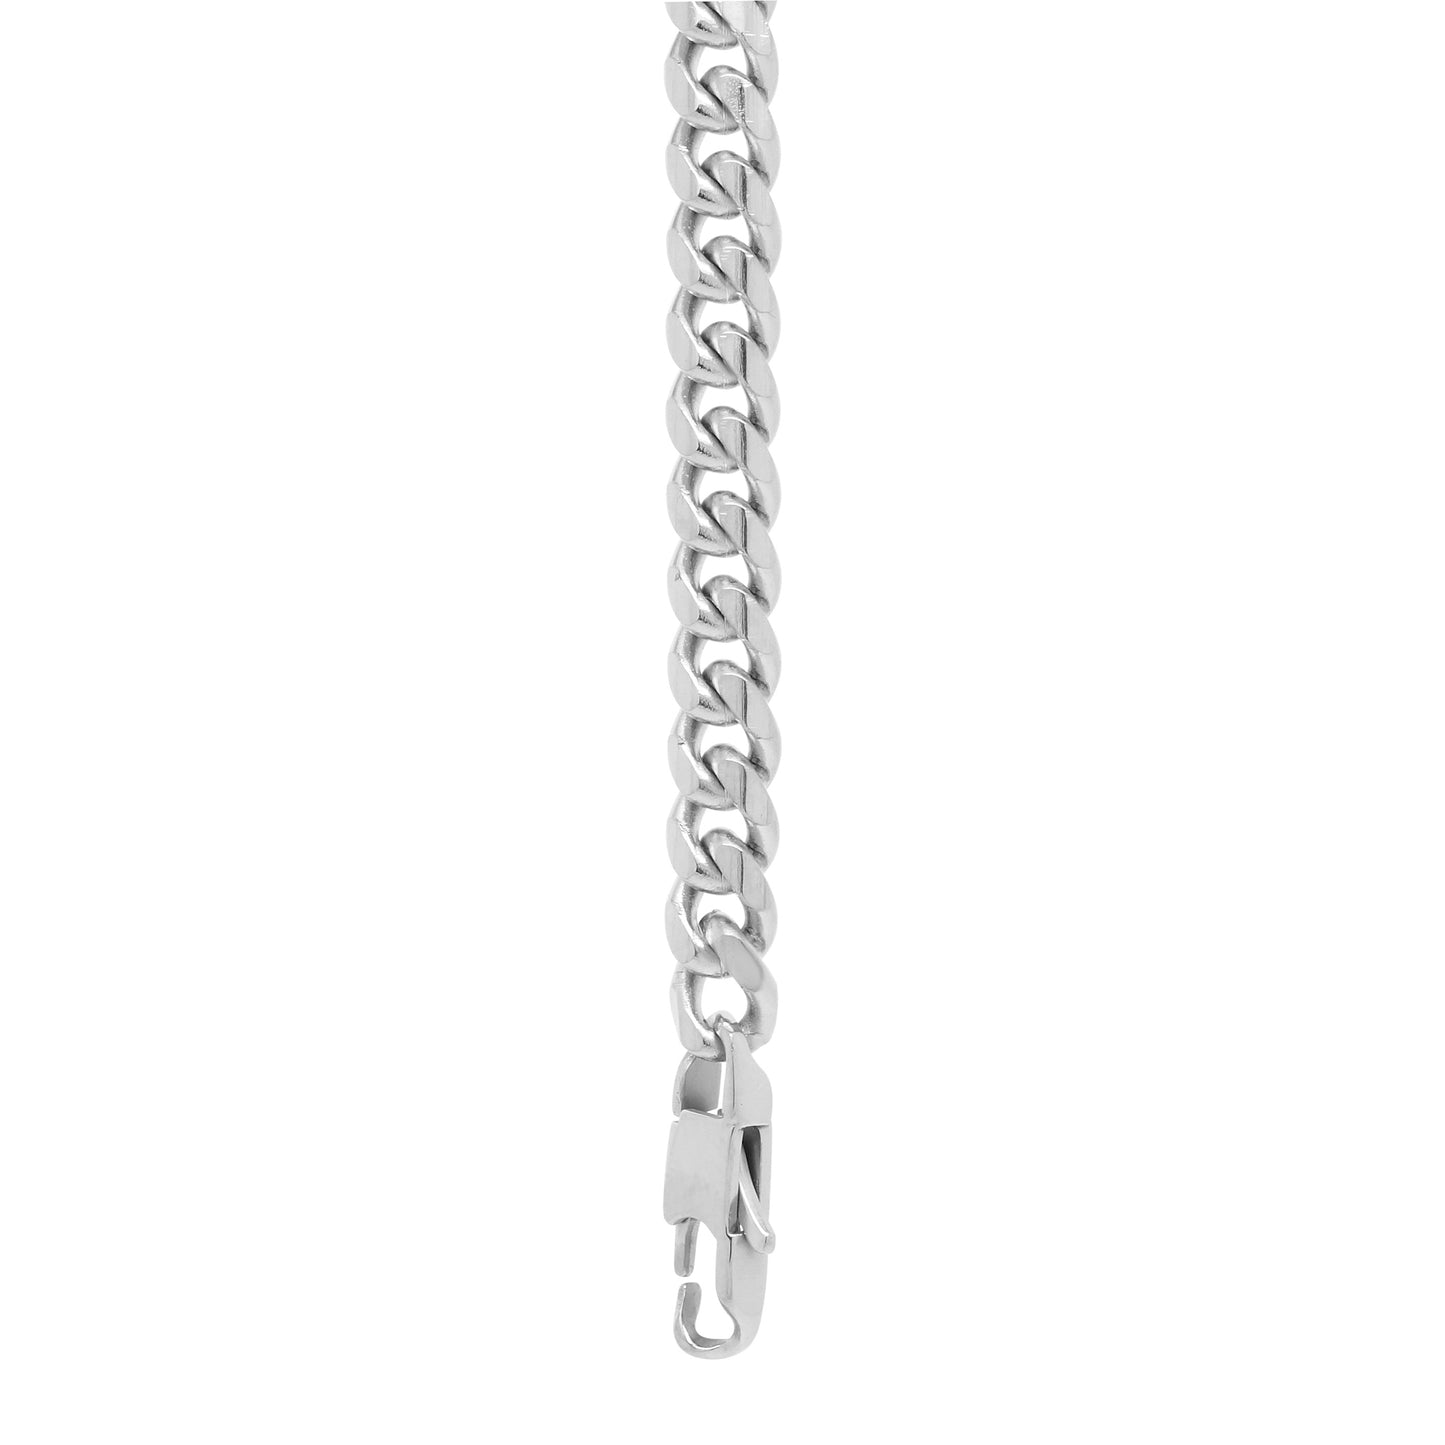 8mm Chain Bracelet - Silver